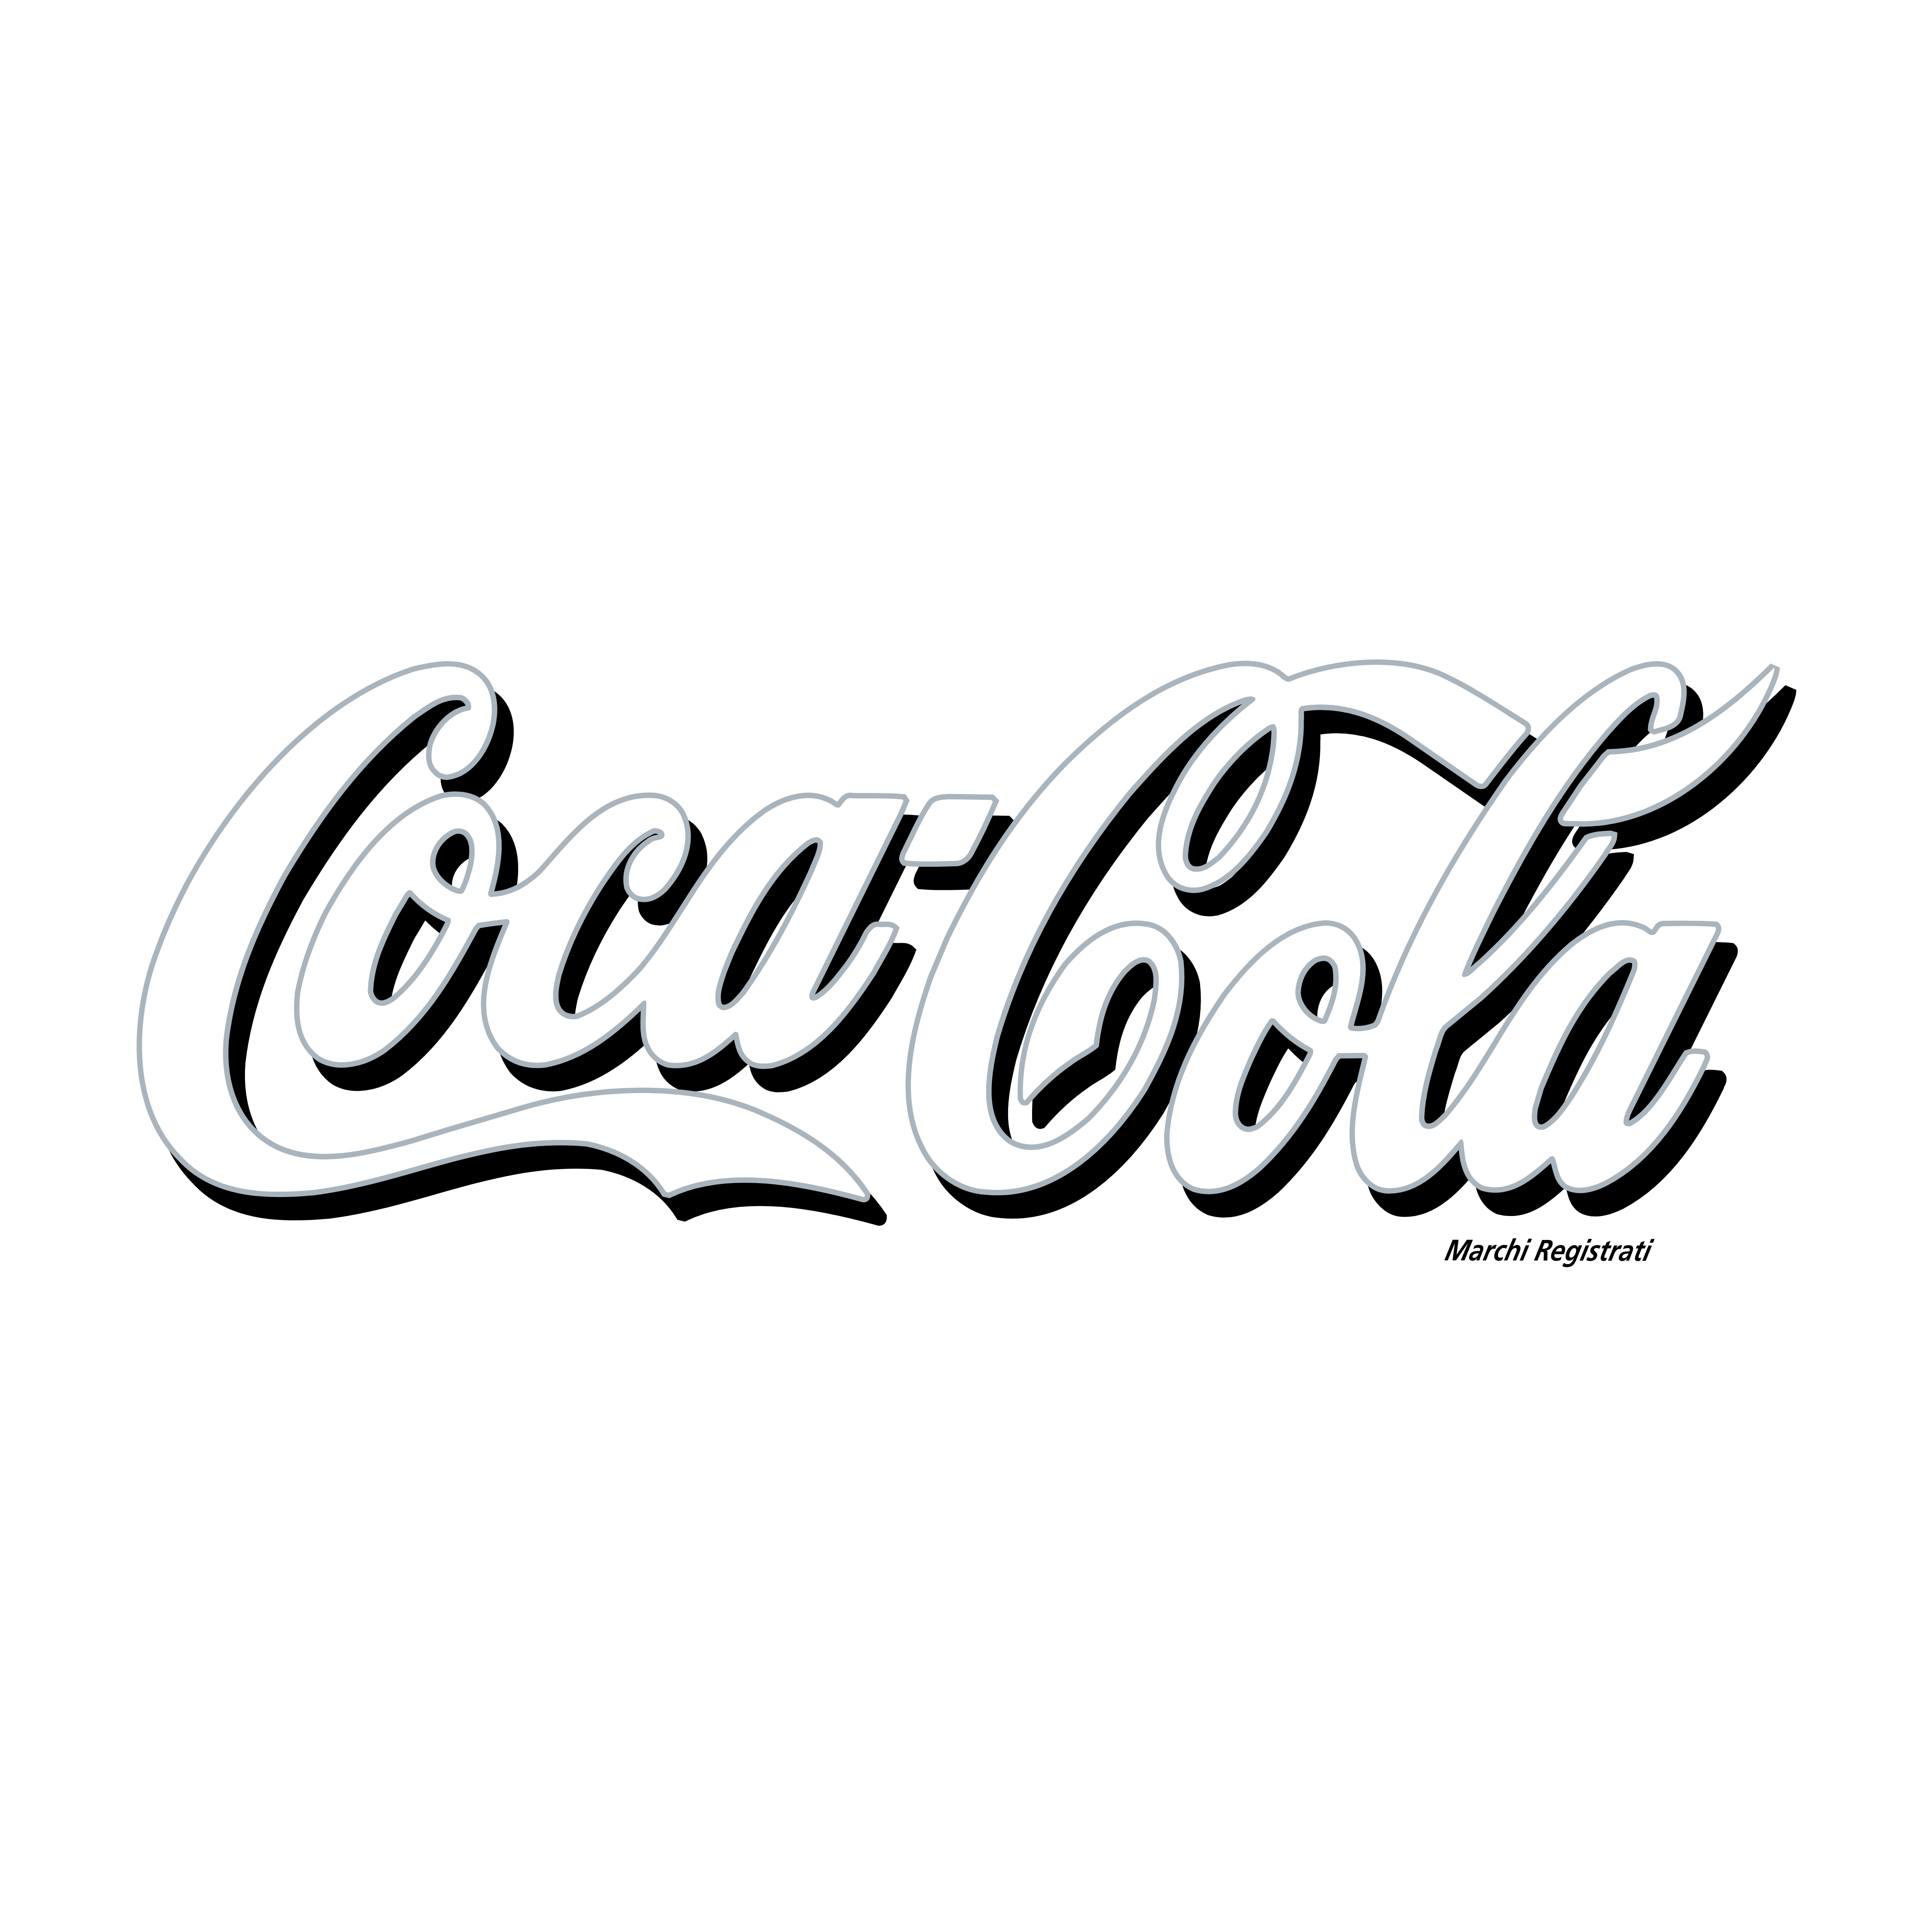 Printable Coca Cola Coloring Pages Pdf - Coca Cola Logo Coloring Pages